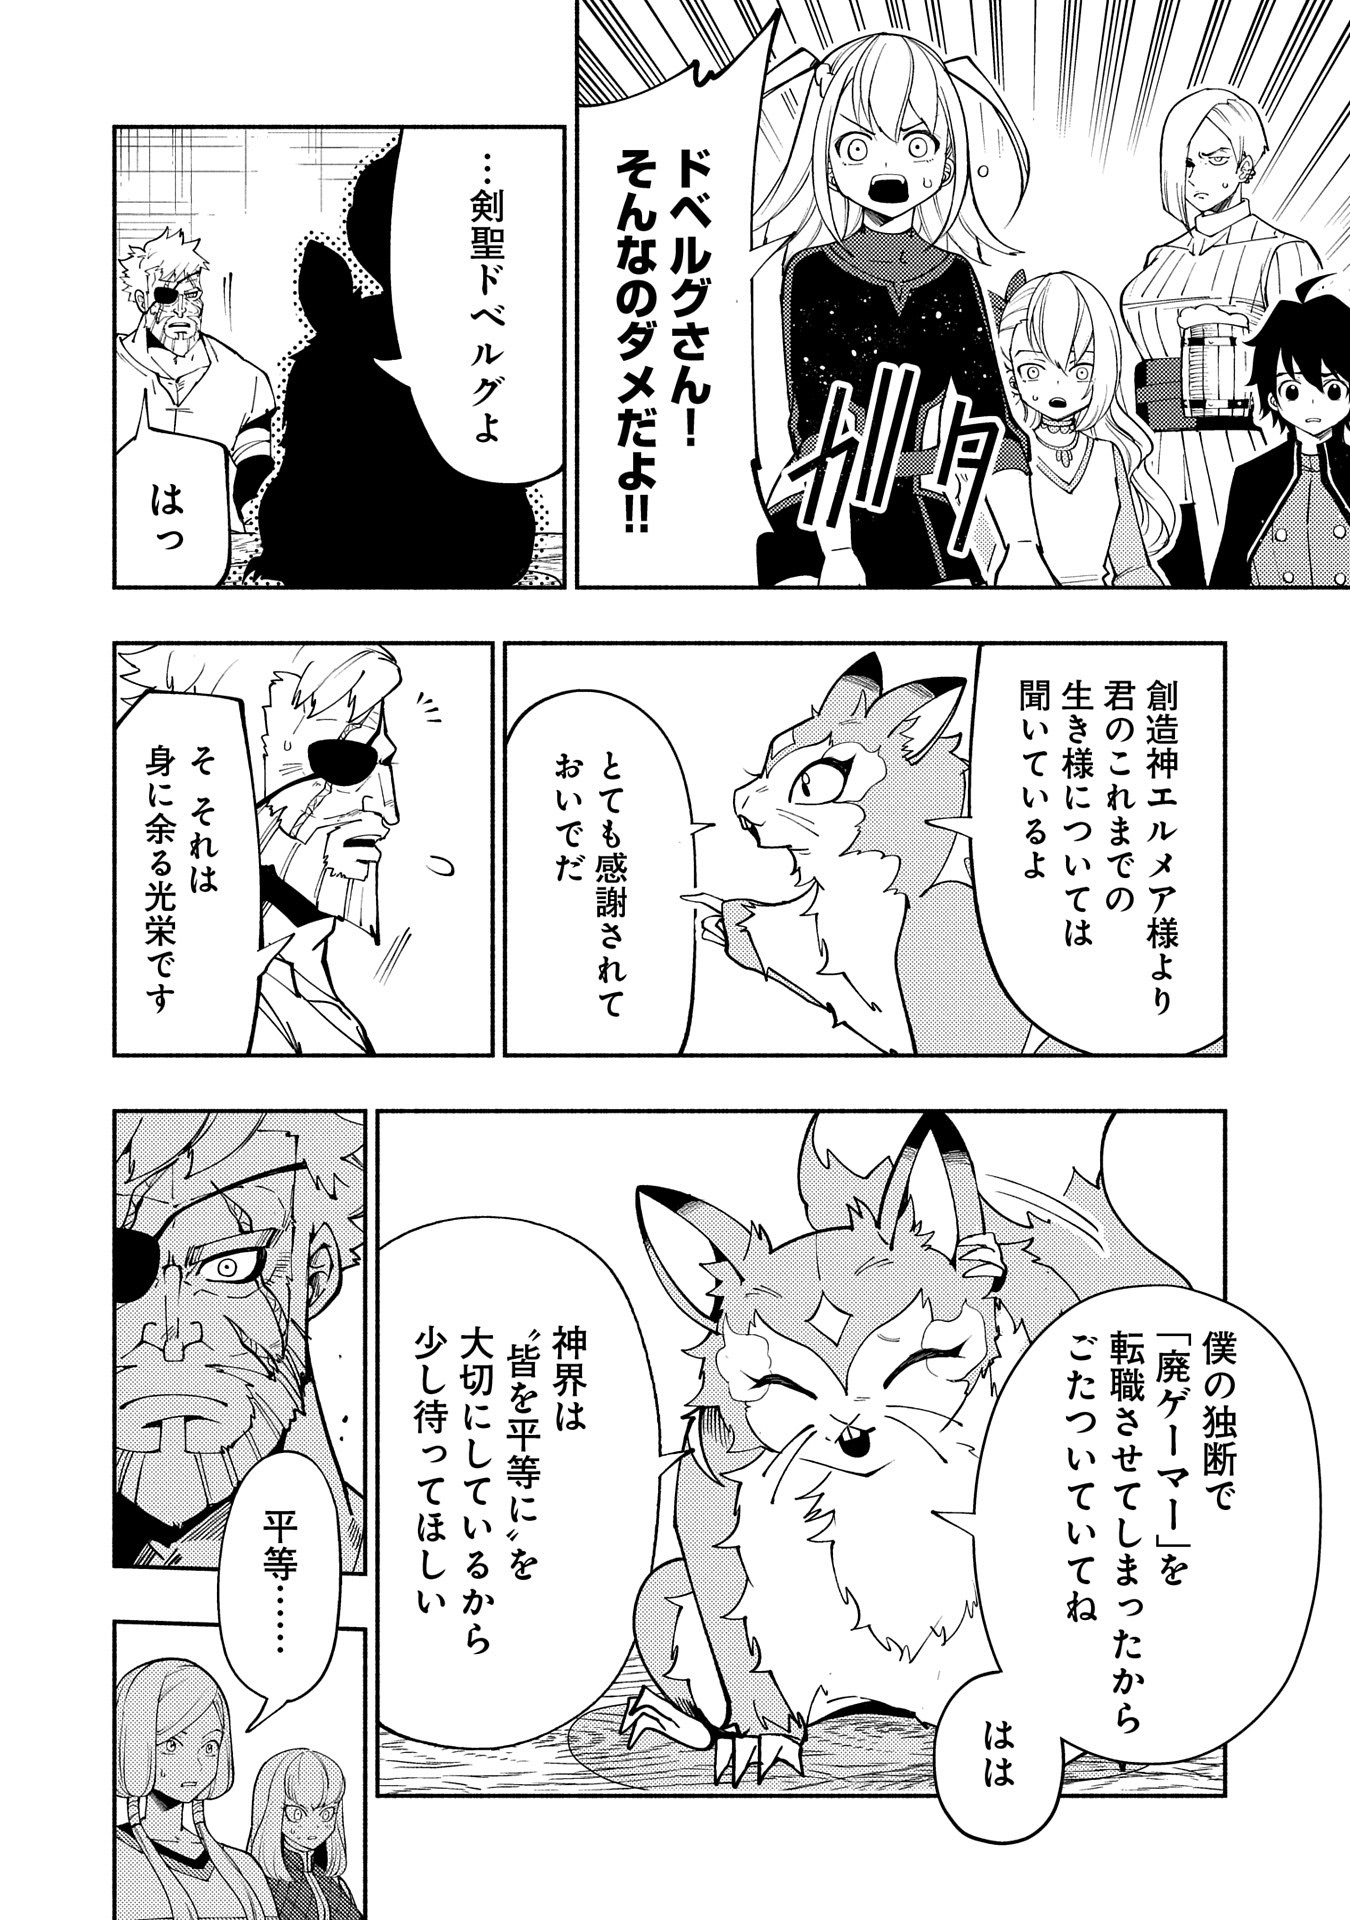 Hell Mode: Yarikomi Suki no Gamer wa Hai Settei no Isekai de Musou Suru - Chapter 61 - Page 2